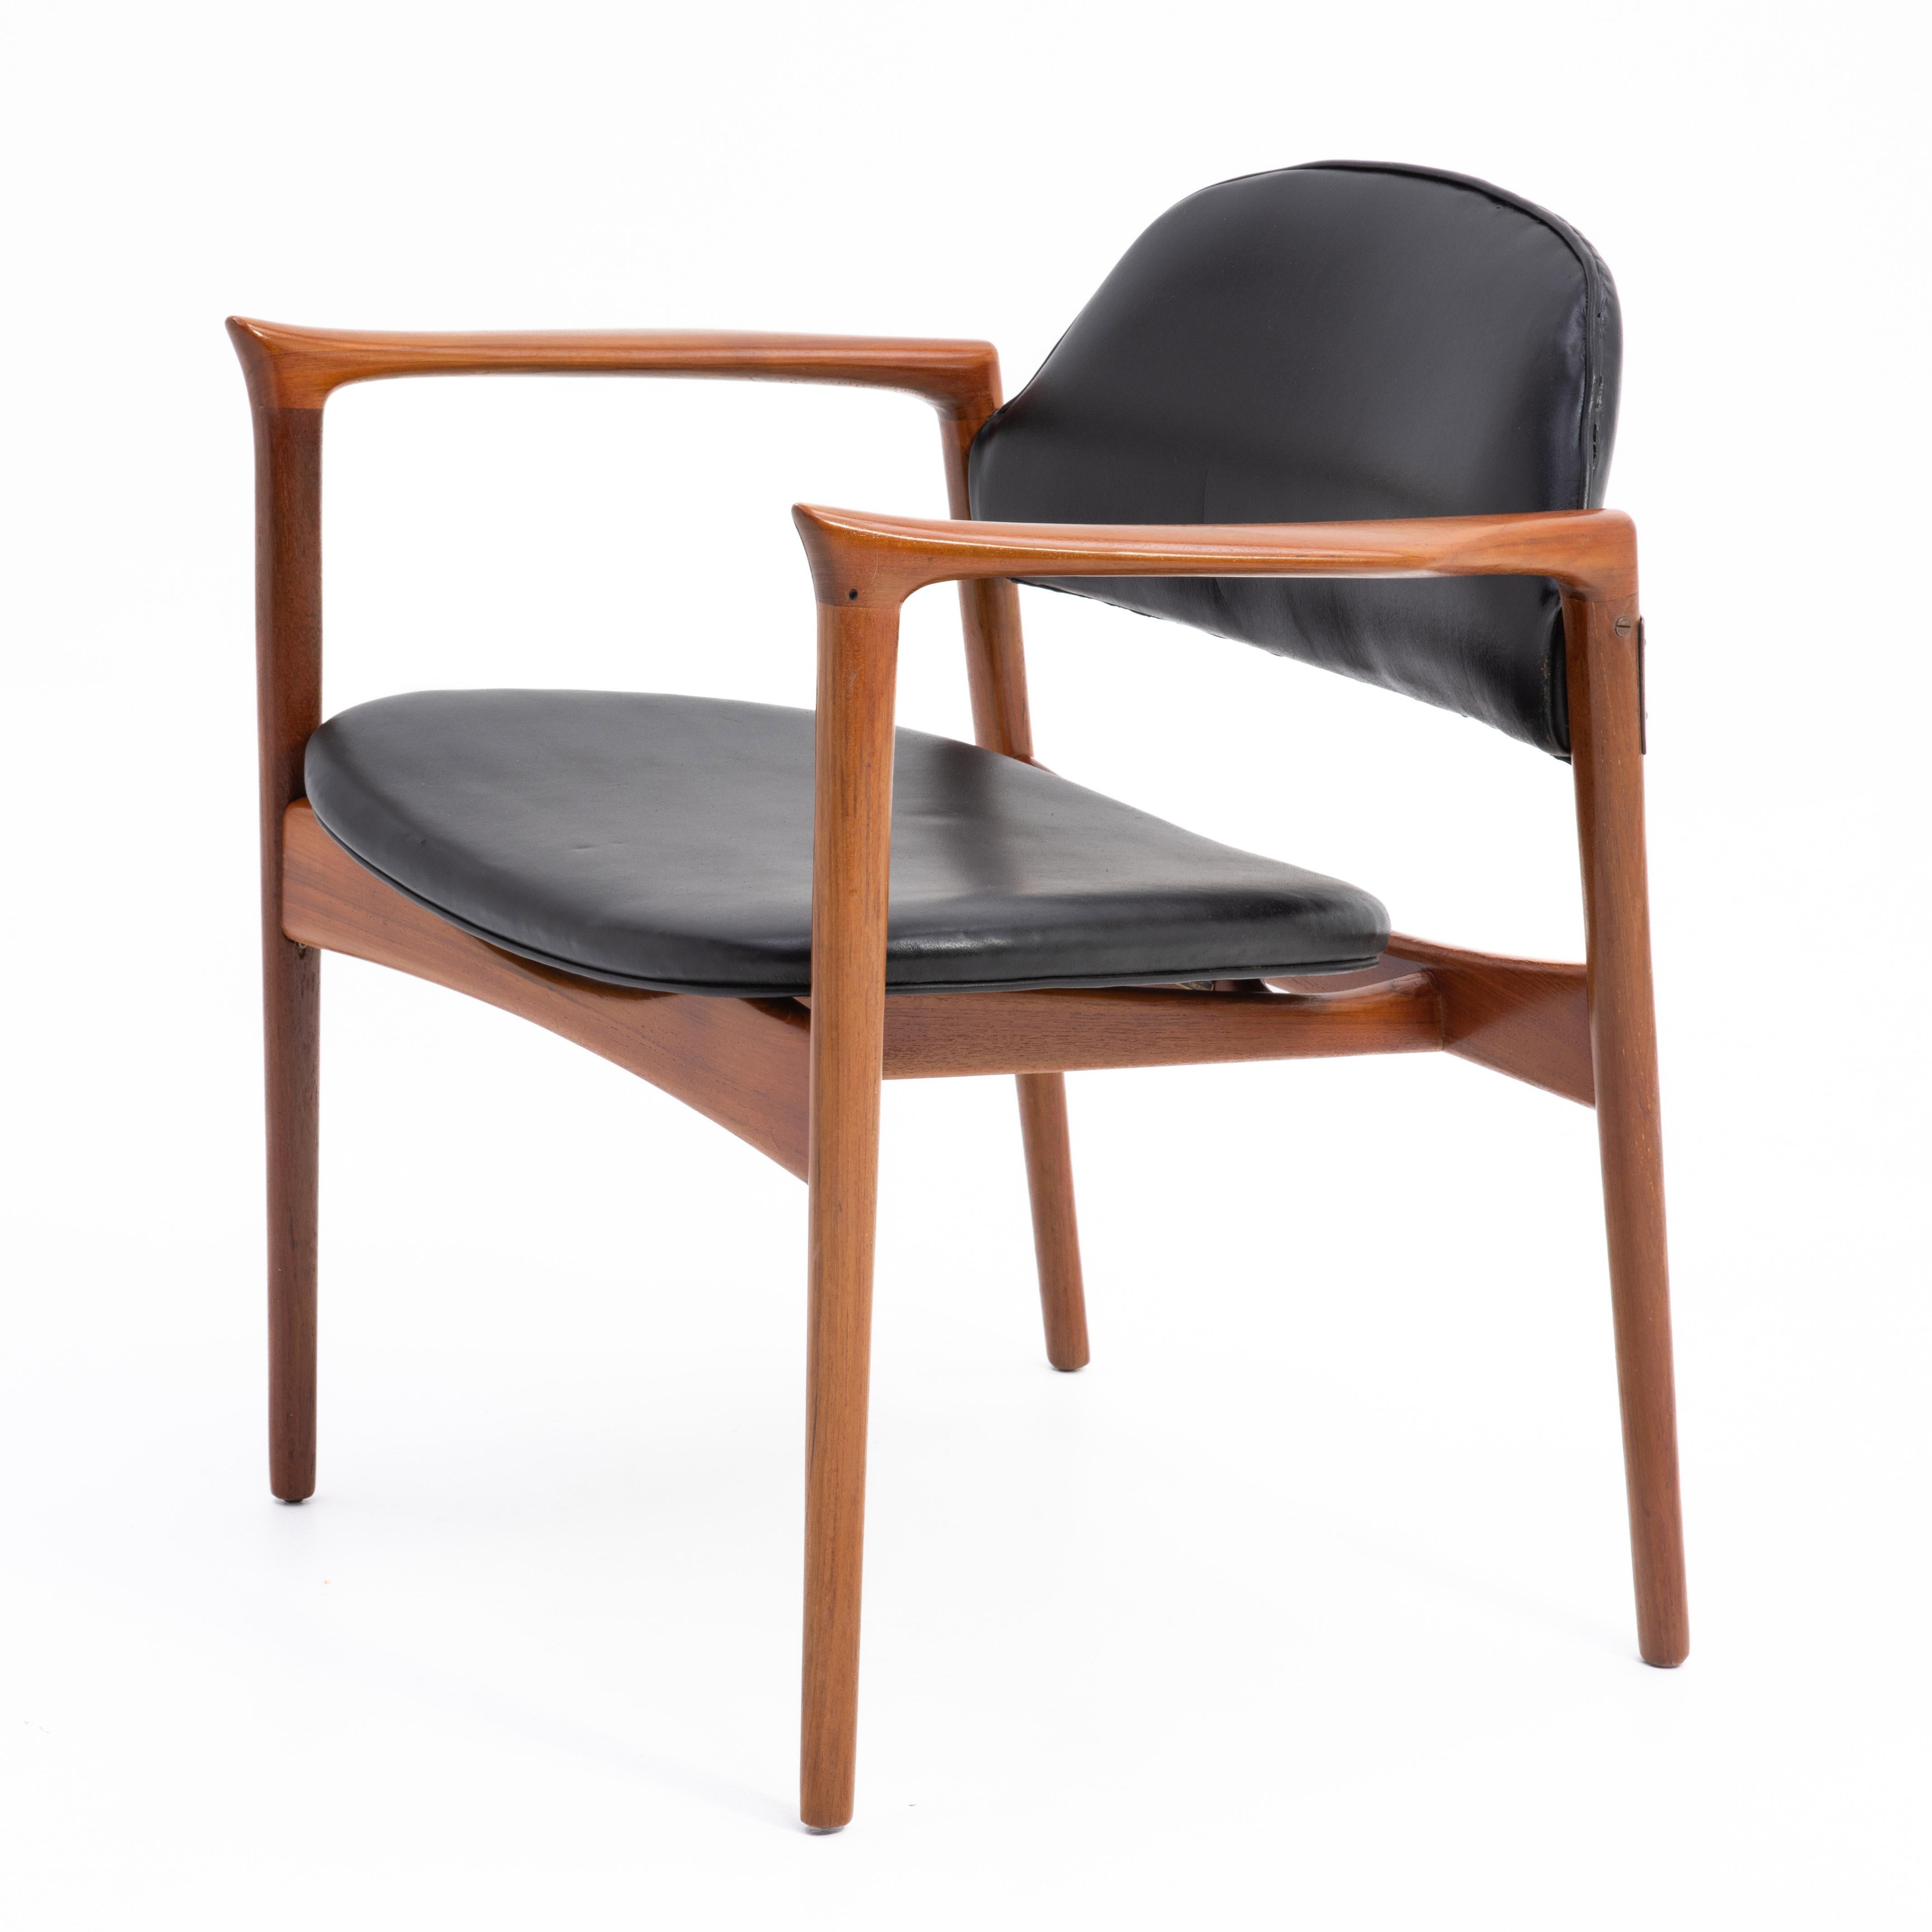 Rare fauteuil en teck danois Ib Kofod Larsen for Selig, magnifiquement restauré, avec une assise et un dossier flottants en vinyle. Parfois appelé 